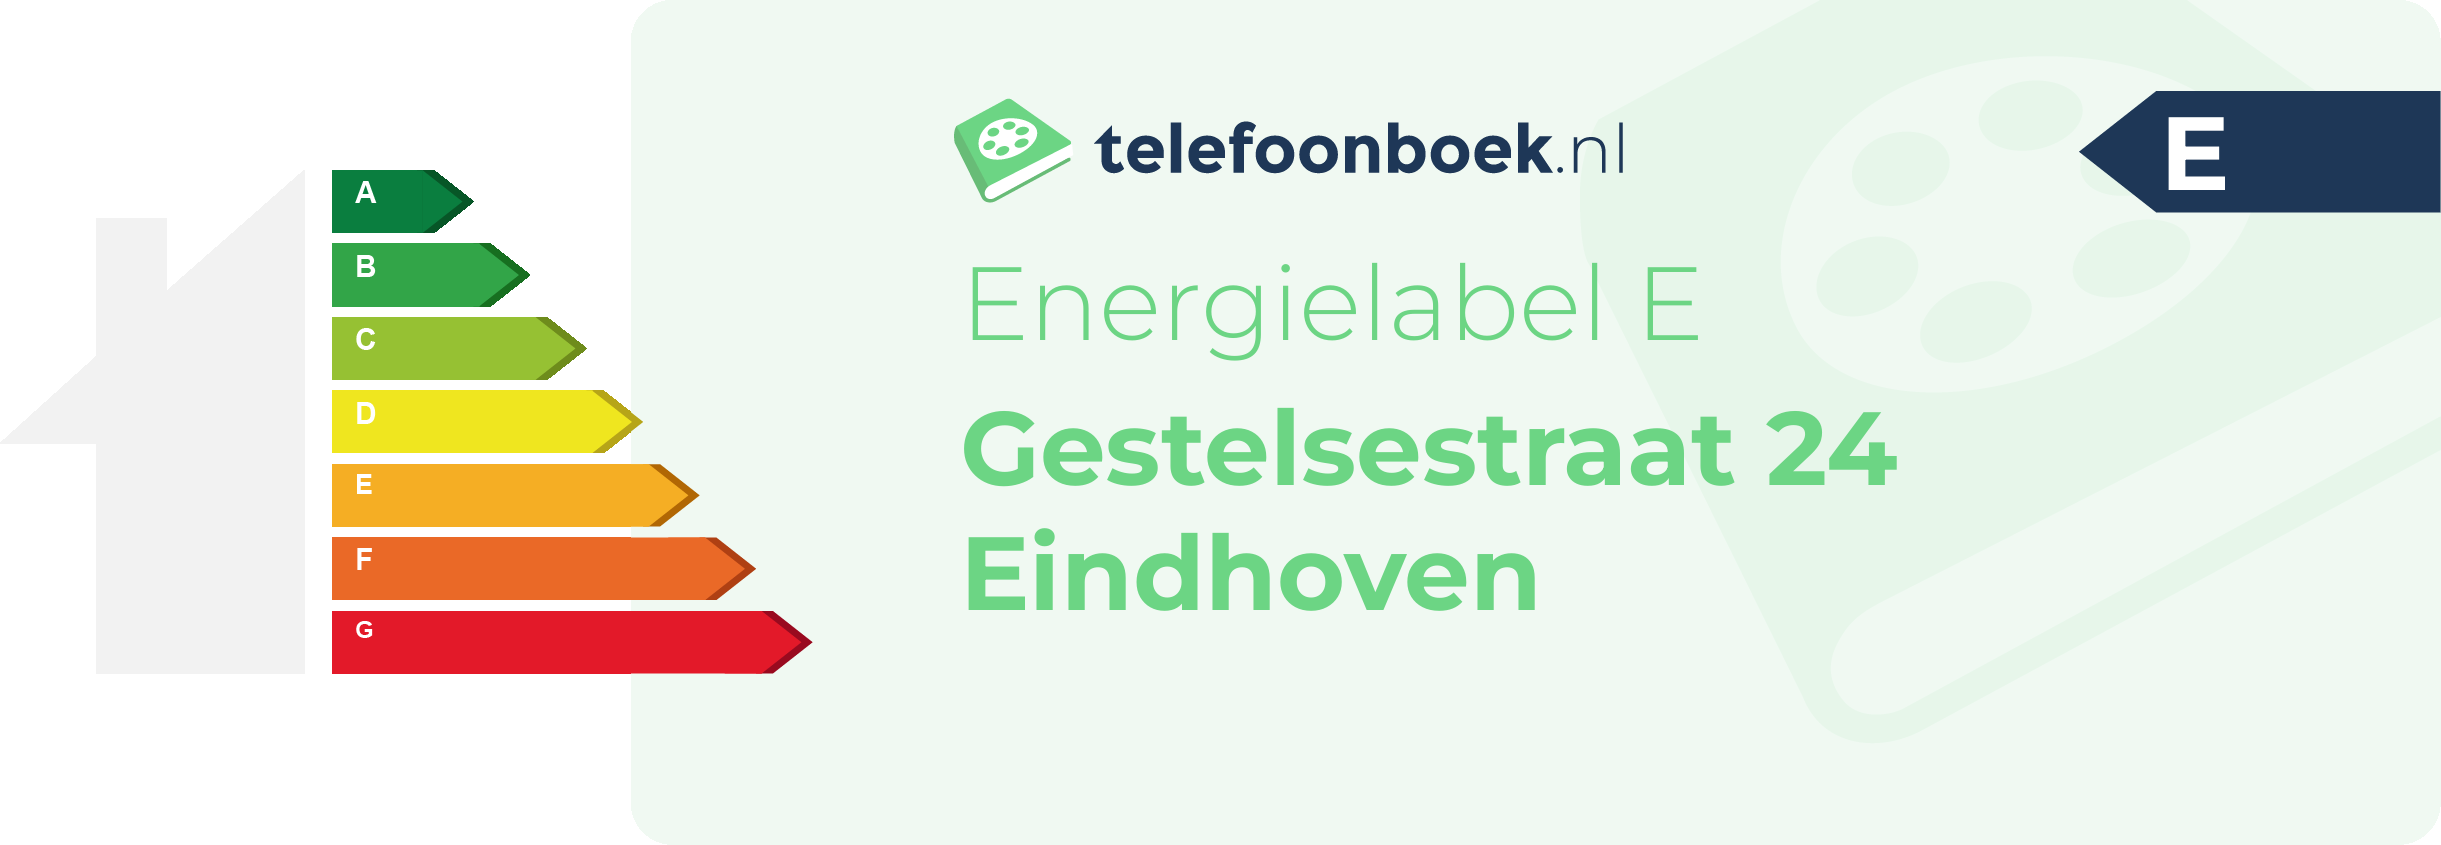 Energielabel Gestelsestraat 24 Eindhoven